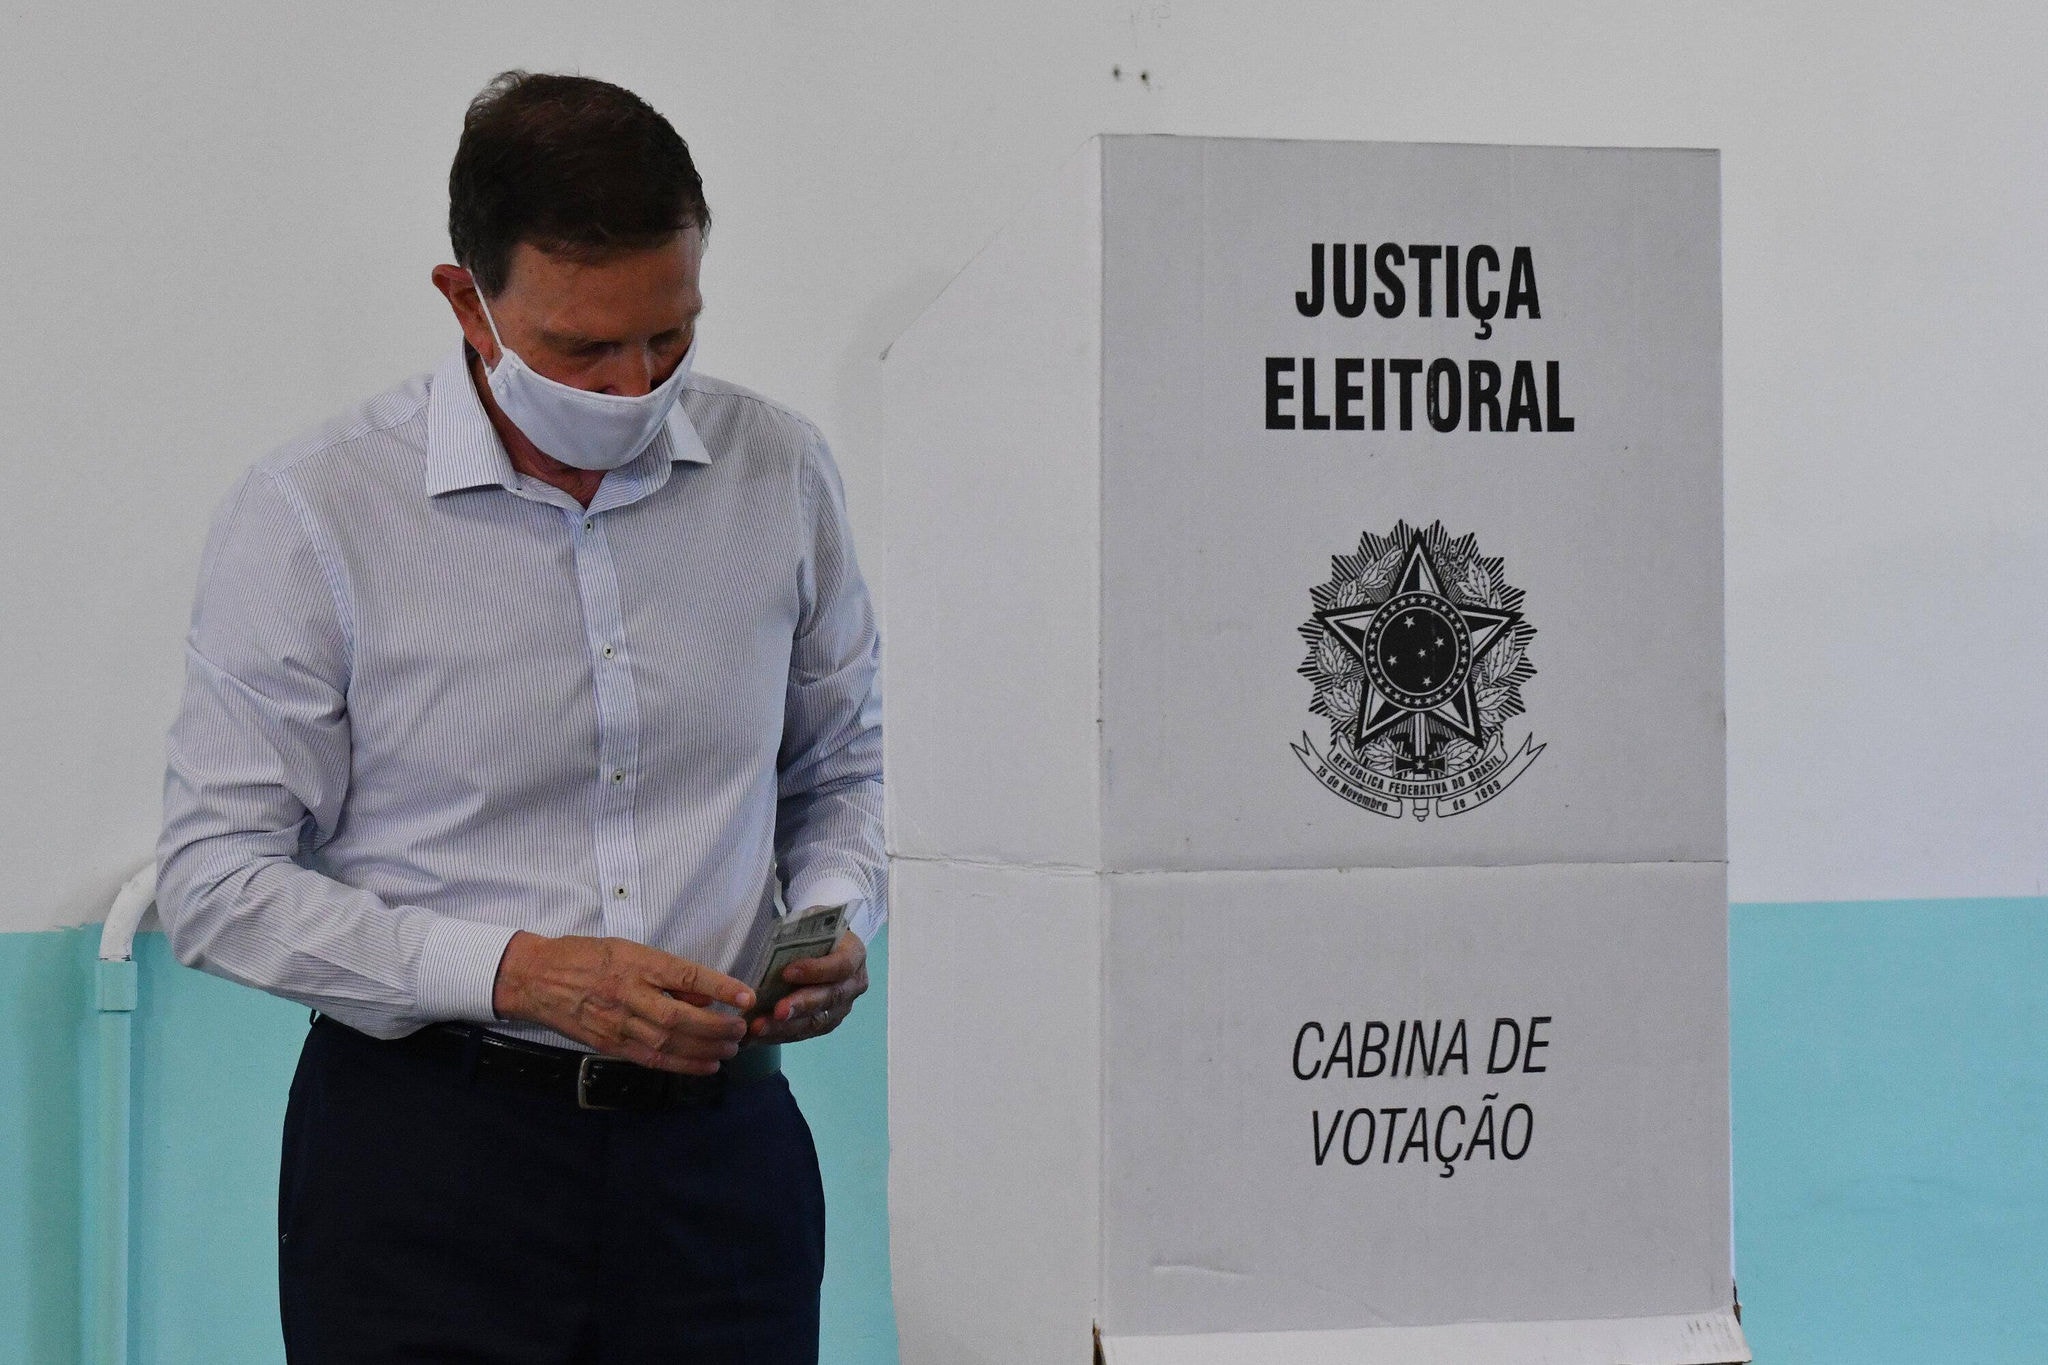 O atual prefeito do Rio de Janeiro e candidato à reeleição, Marcelo Crivella (Republicanos), vota no segundo turno das eleições municipais 2020